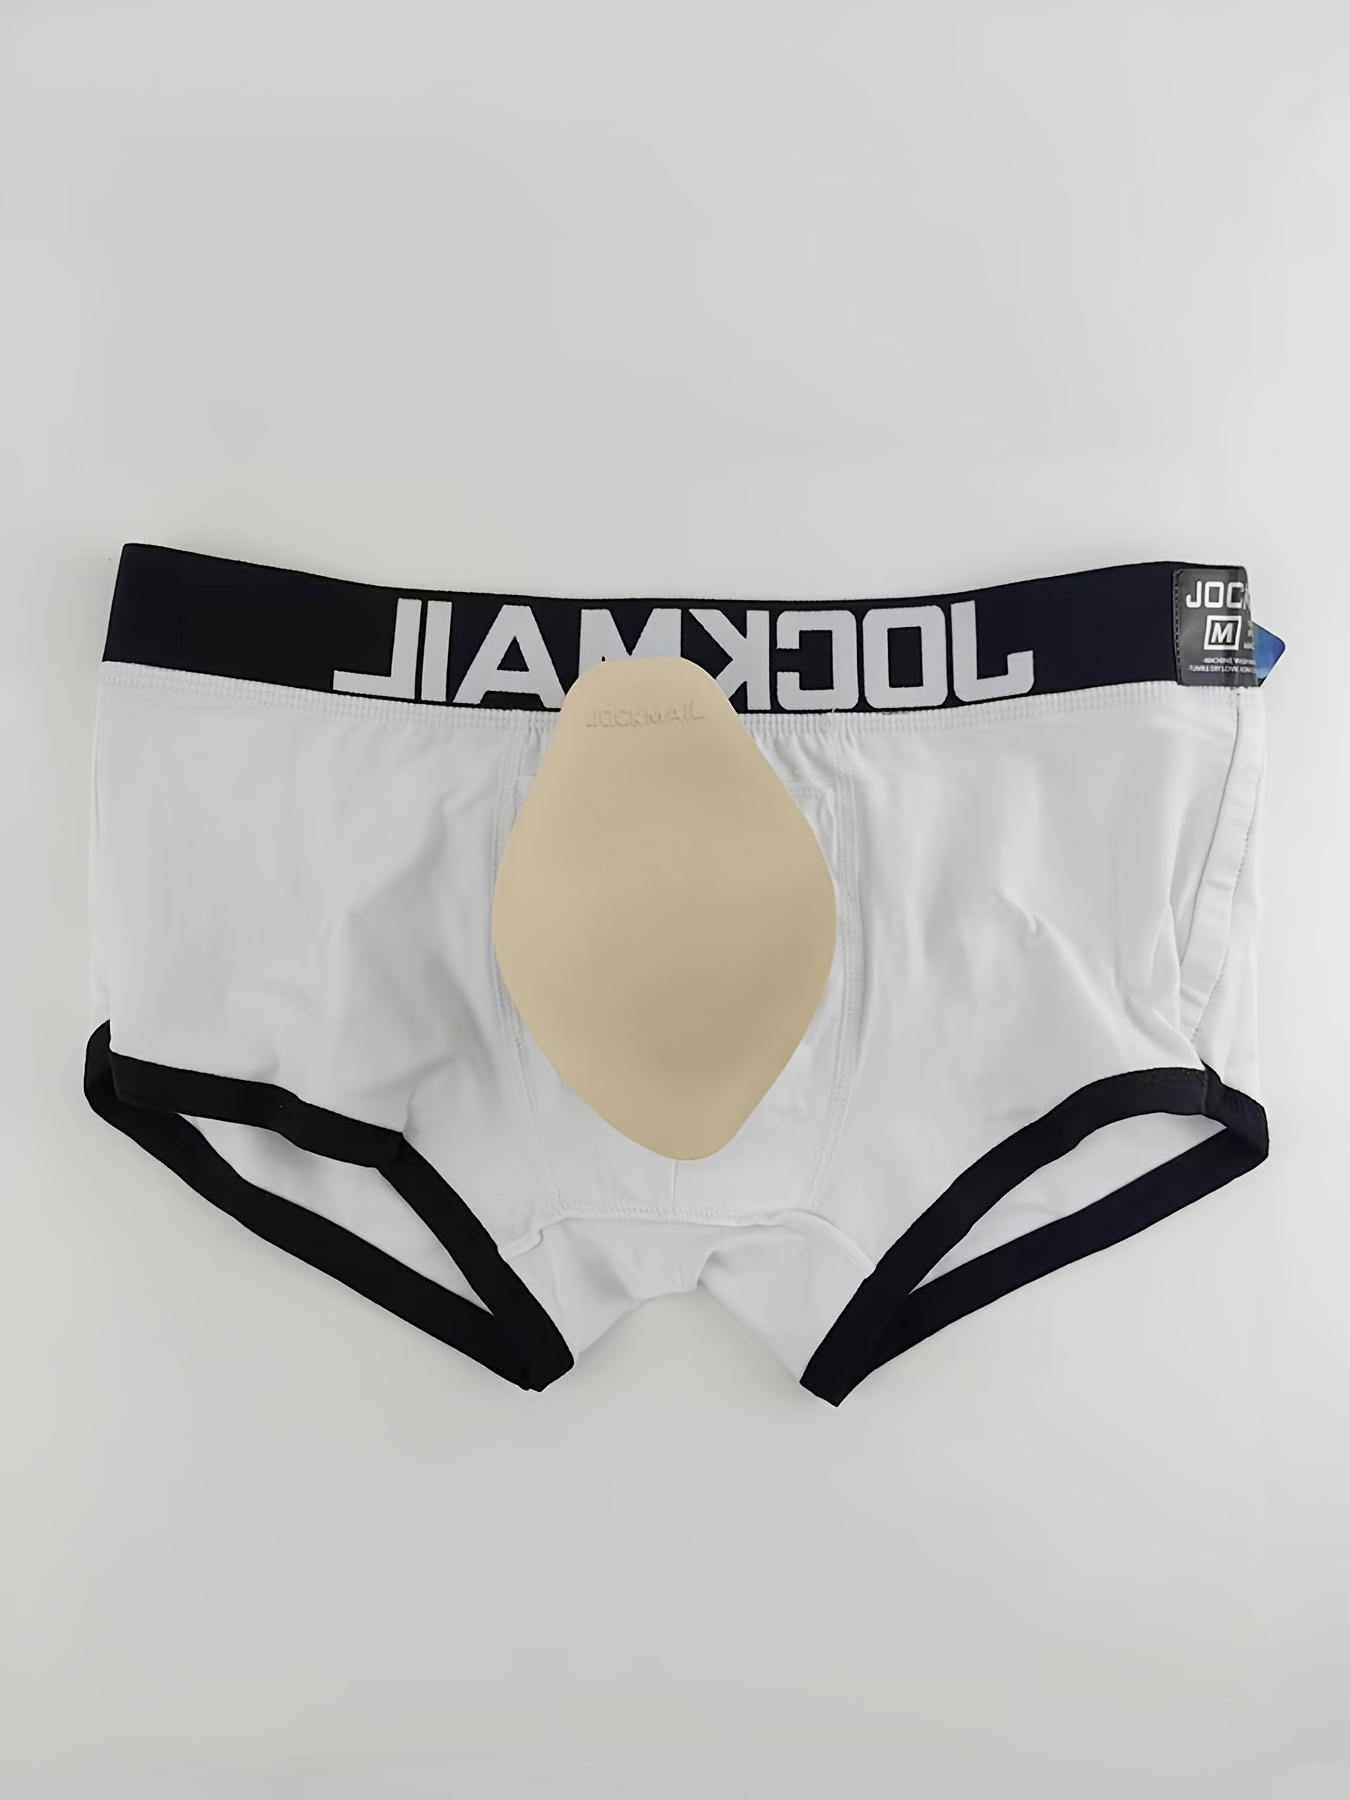 JOCKMAIL Men Underwear Briefs Mesh Men Panties Sexy Men Briefs Underwear  Sleepwear (M, Black) : : Clothing, Shoes & Accessories